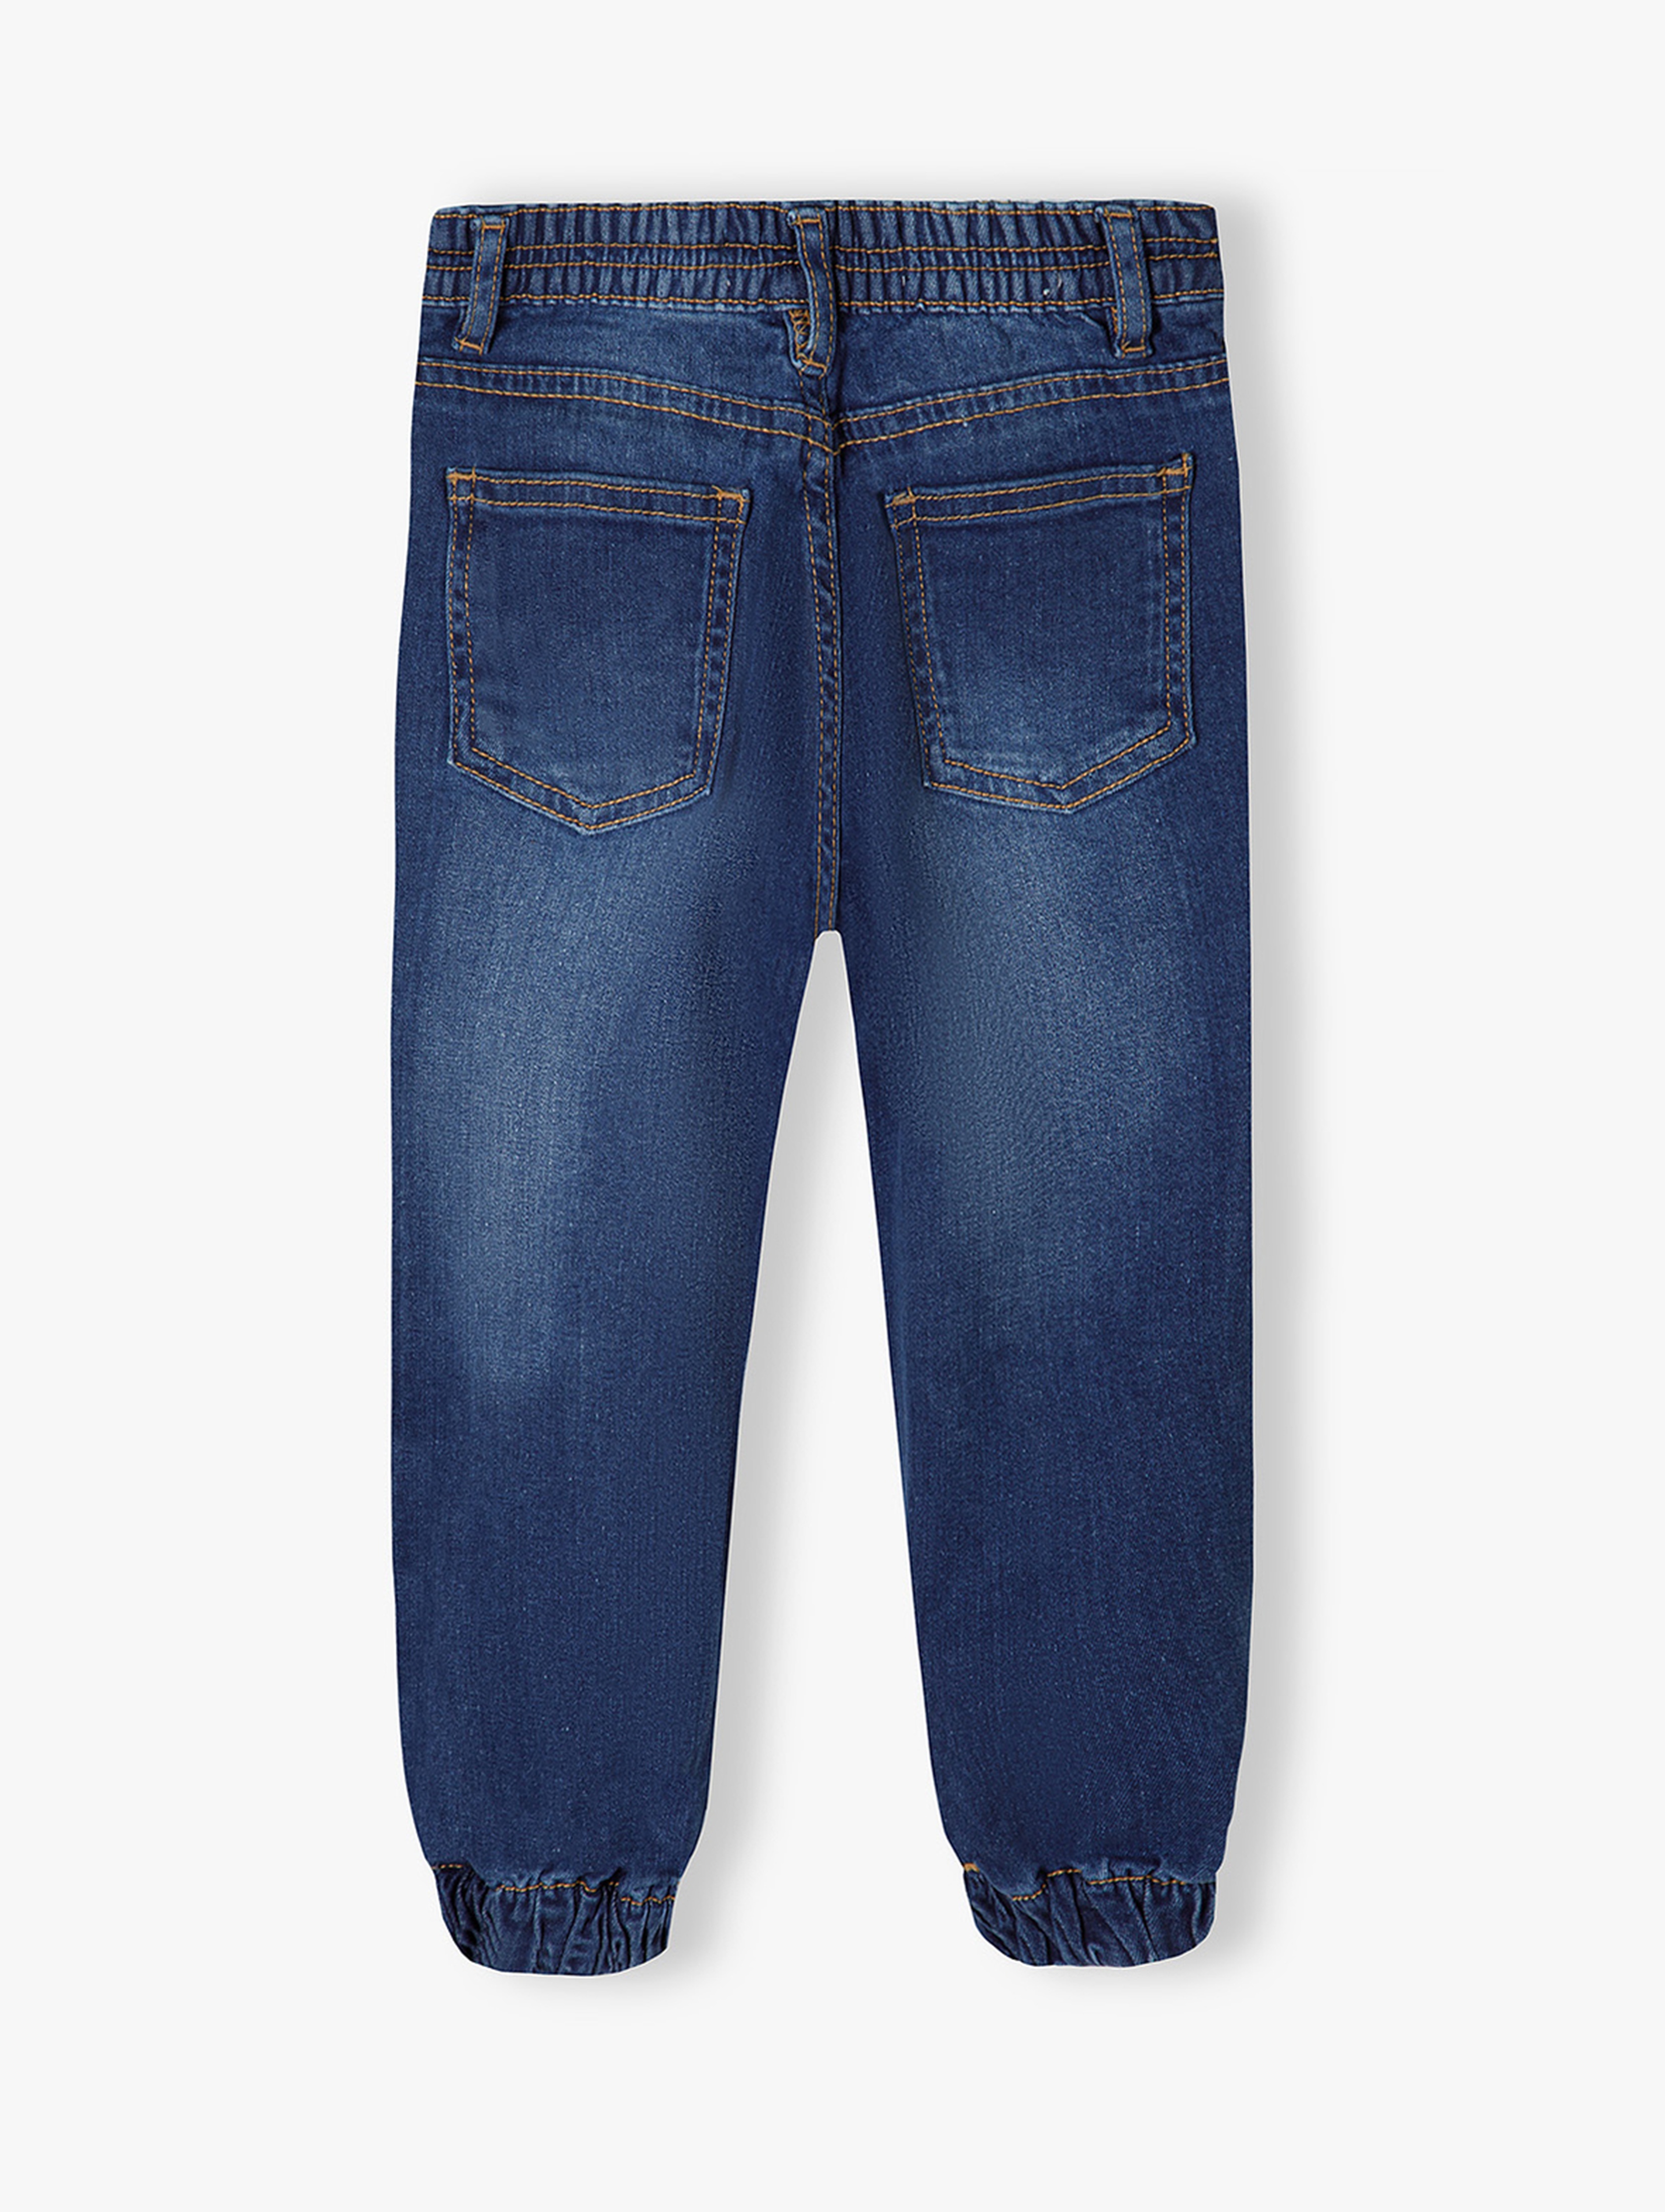 Spodnie jeansowe dla dziewczynki typu joggery - granatowe